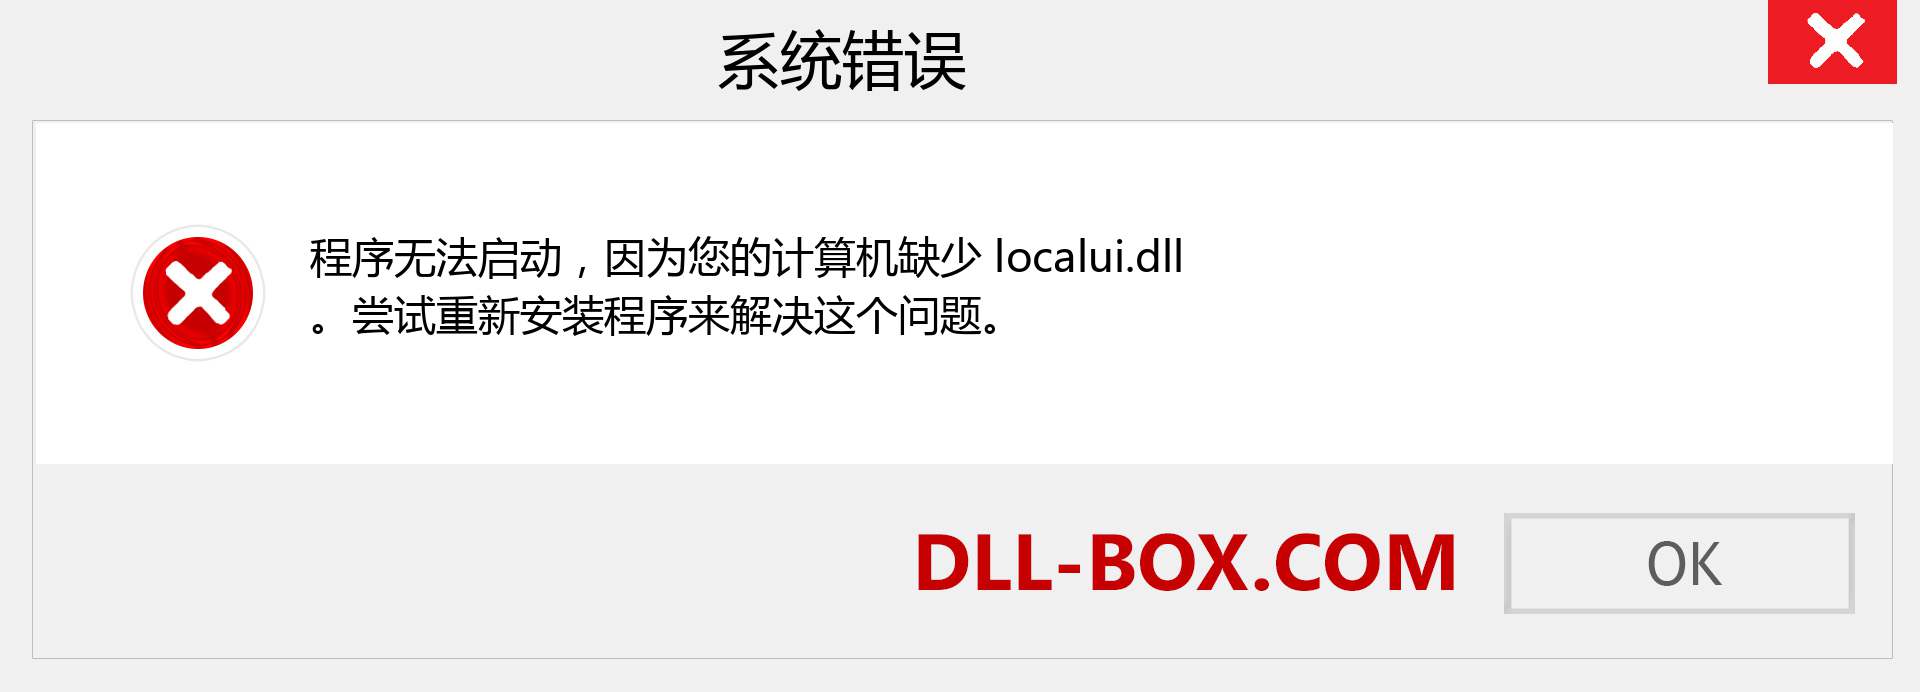 localui.dll 文件丢失？。 适用于 Windows 7、8、10 的下载 - 修复 Windows、照片、图像上的 localui dll 丢失错误